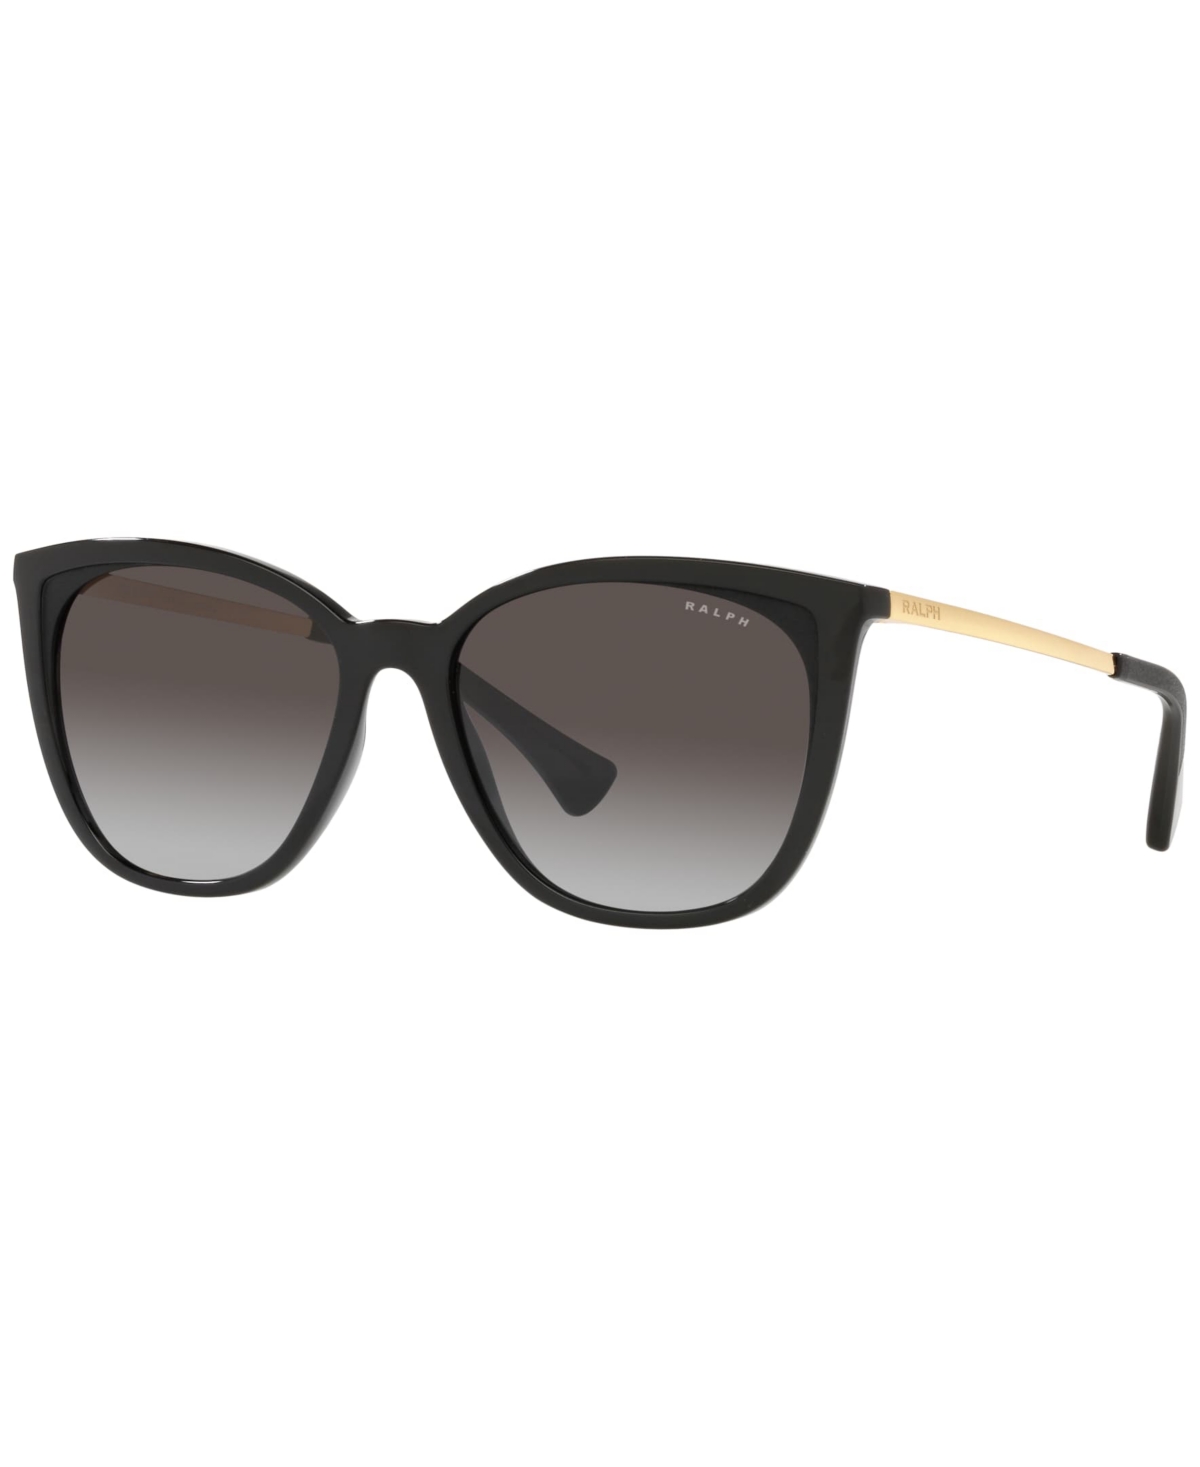 Women's Sunglasses, RA5280 - Shiny Black